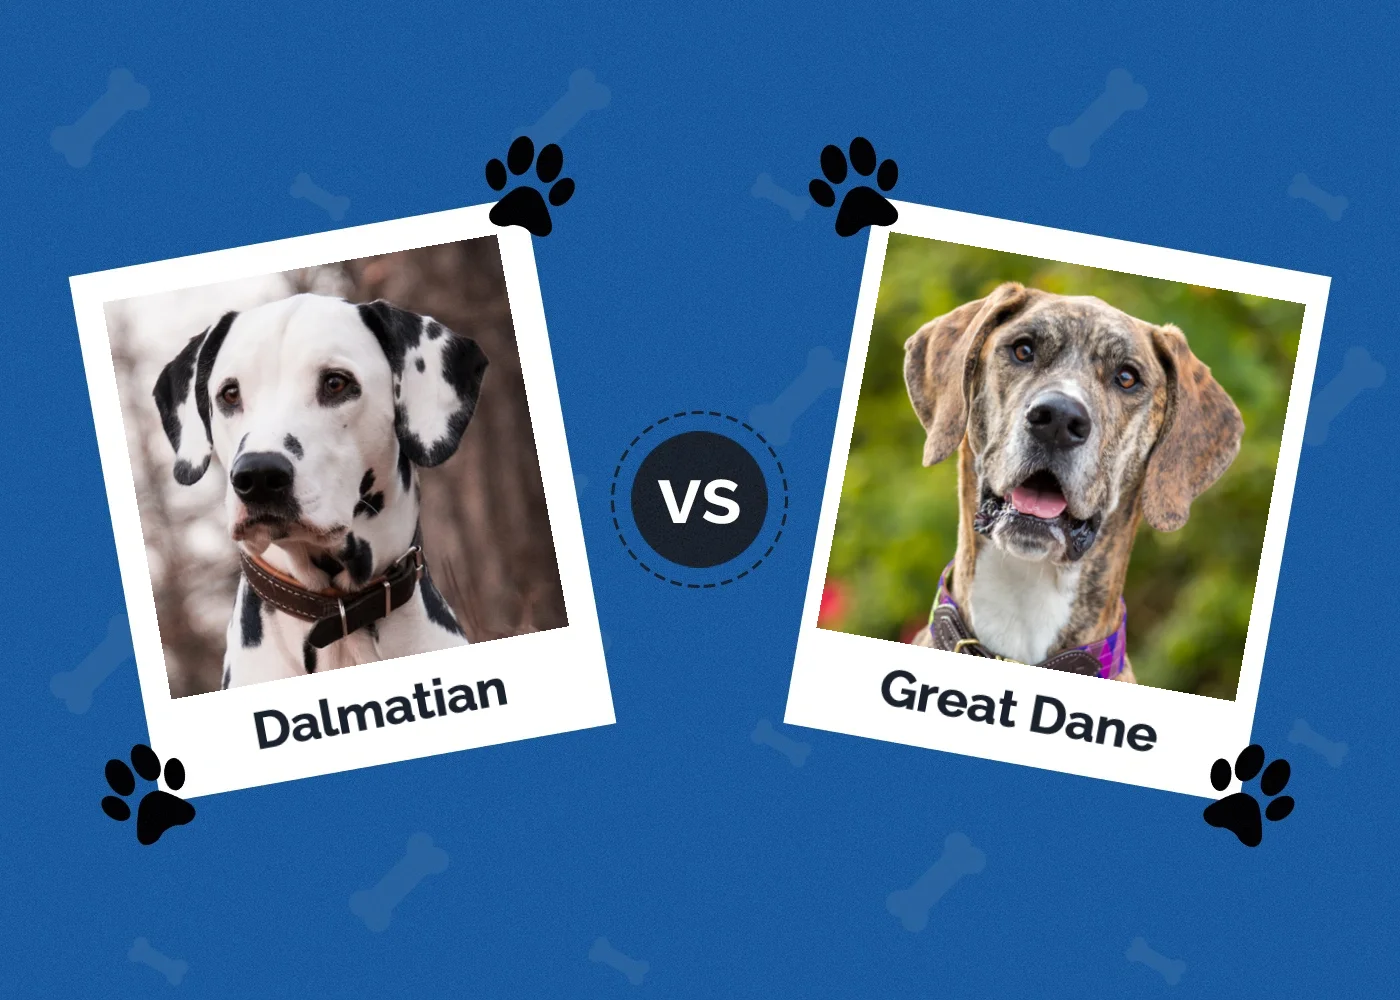 Dalmatian vs Great Dane - Featured Image